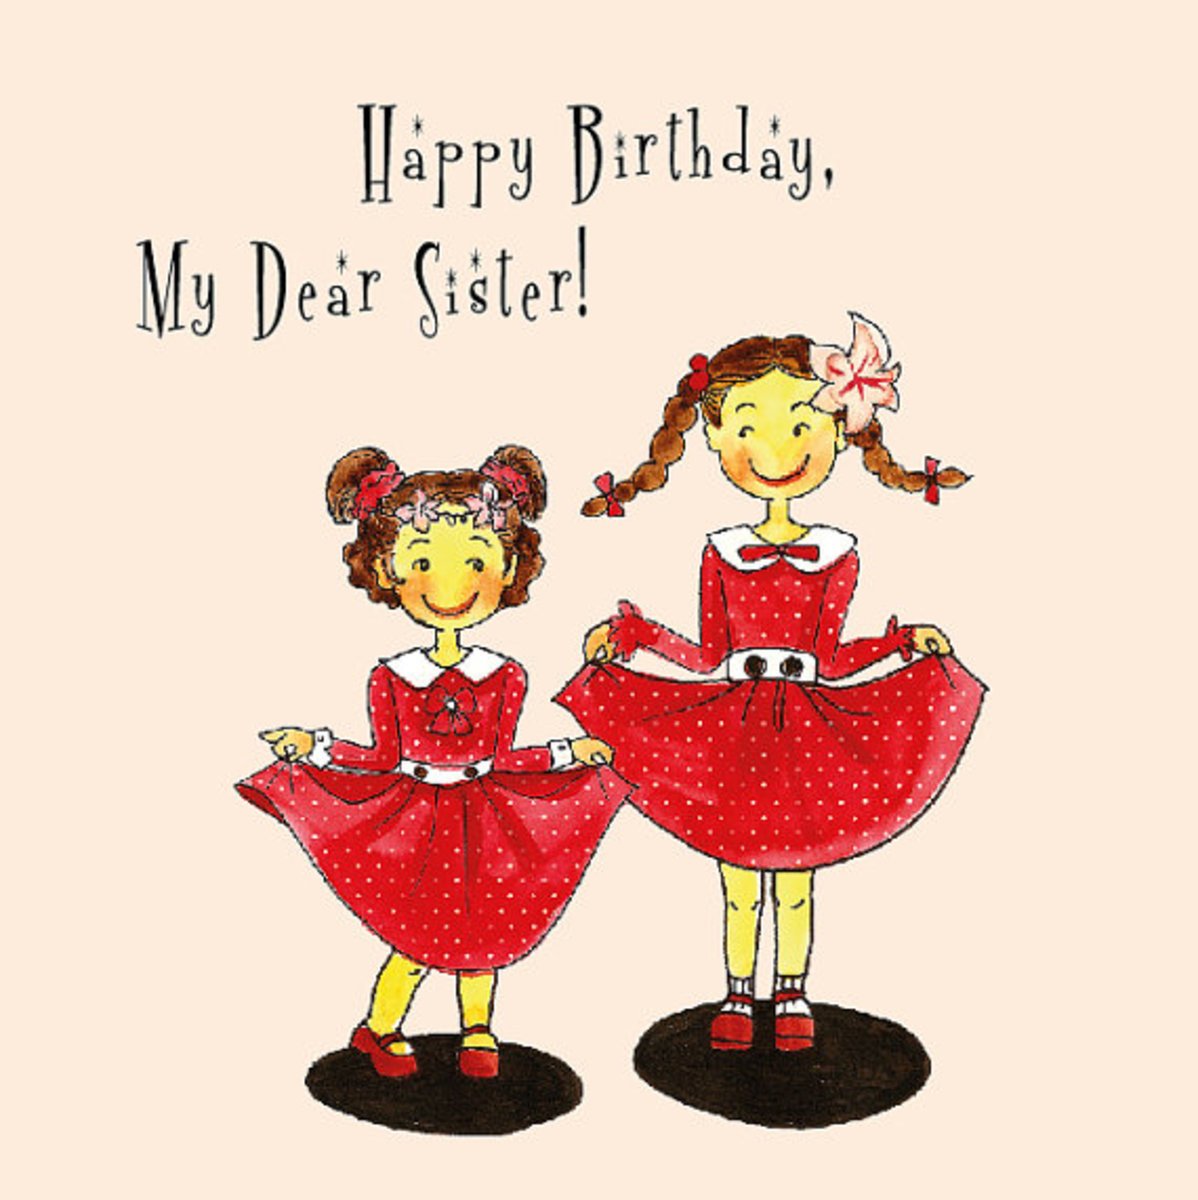 Sister s birthday. С днём рождения систер. С днем рождения систер поздравления. Открытки с днём рождения систер. Открытка Happy Birthday sister.